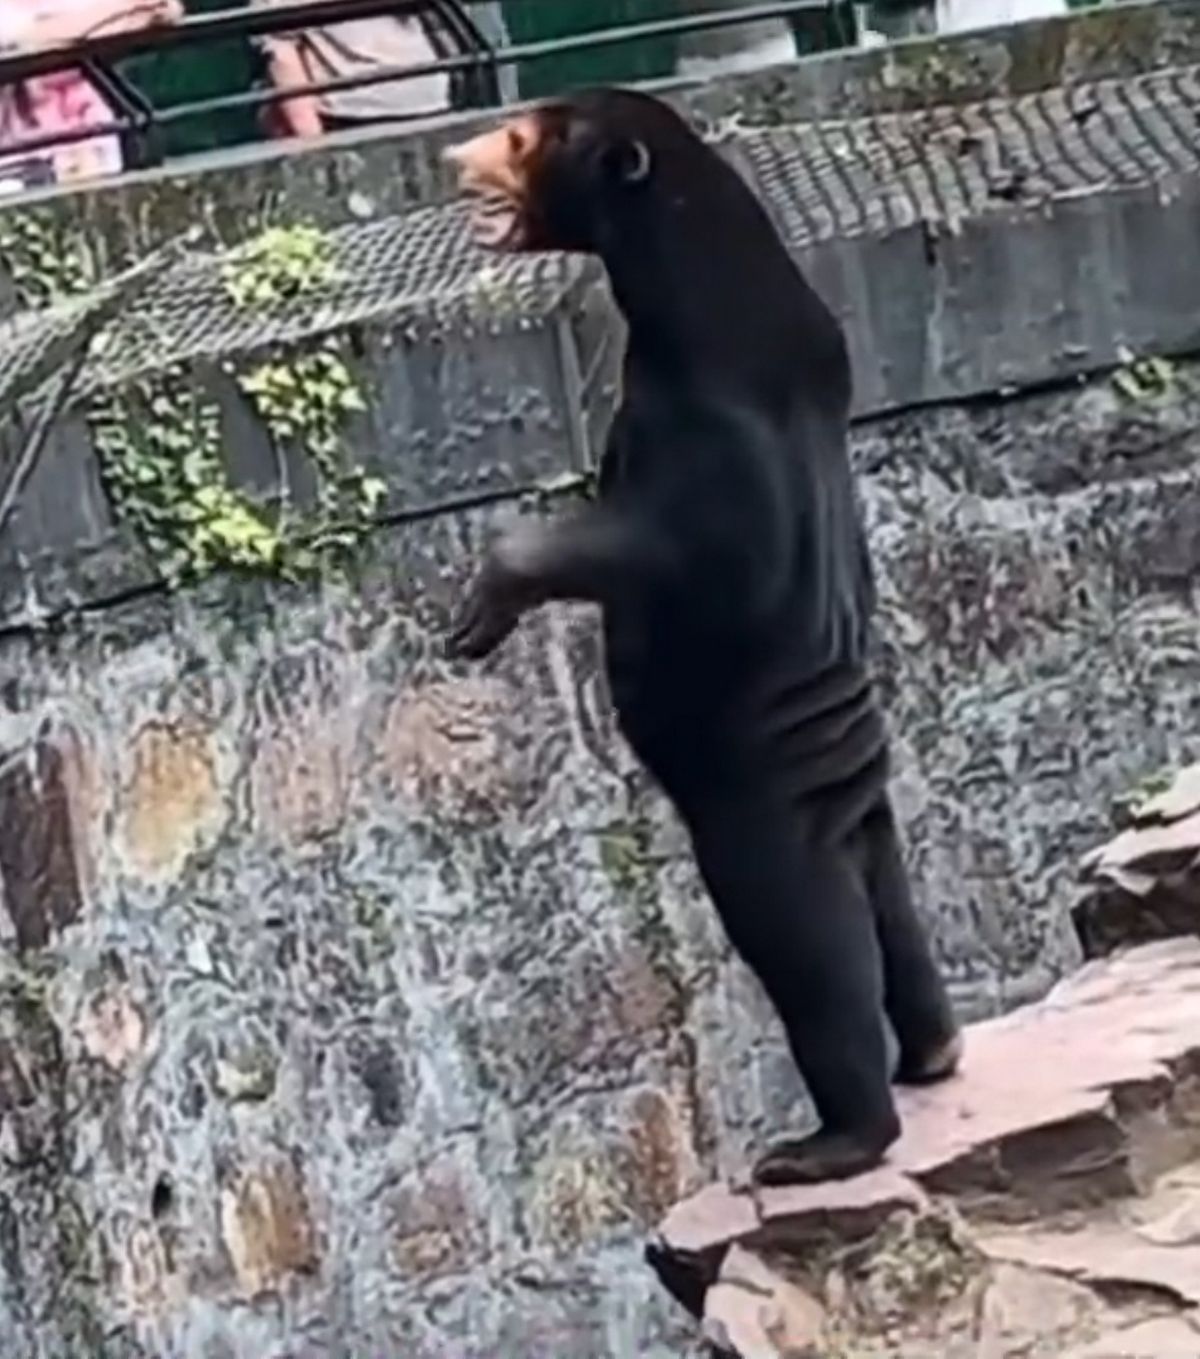 Sur X, une vidéo étrange a été diffusée, montrant un ours à l’apparence inhabituelle, se tenant debout sur ses pattes arrière et s’engageant avec la foule.